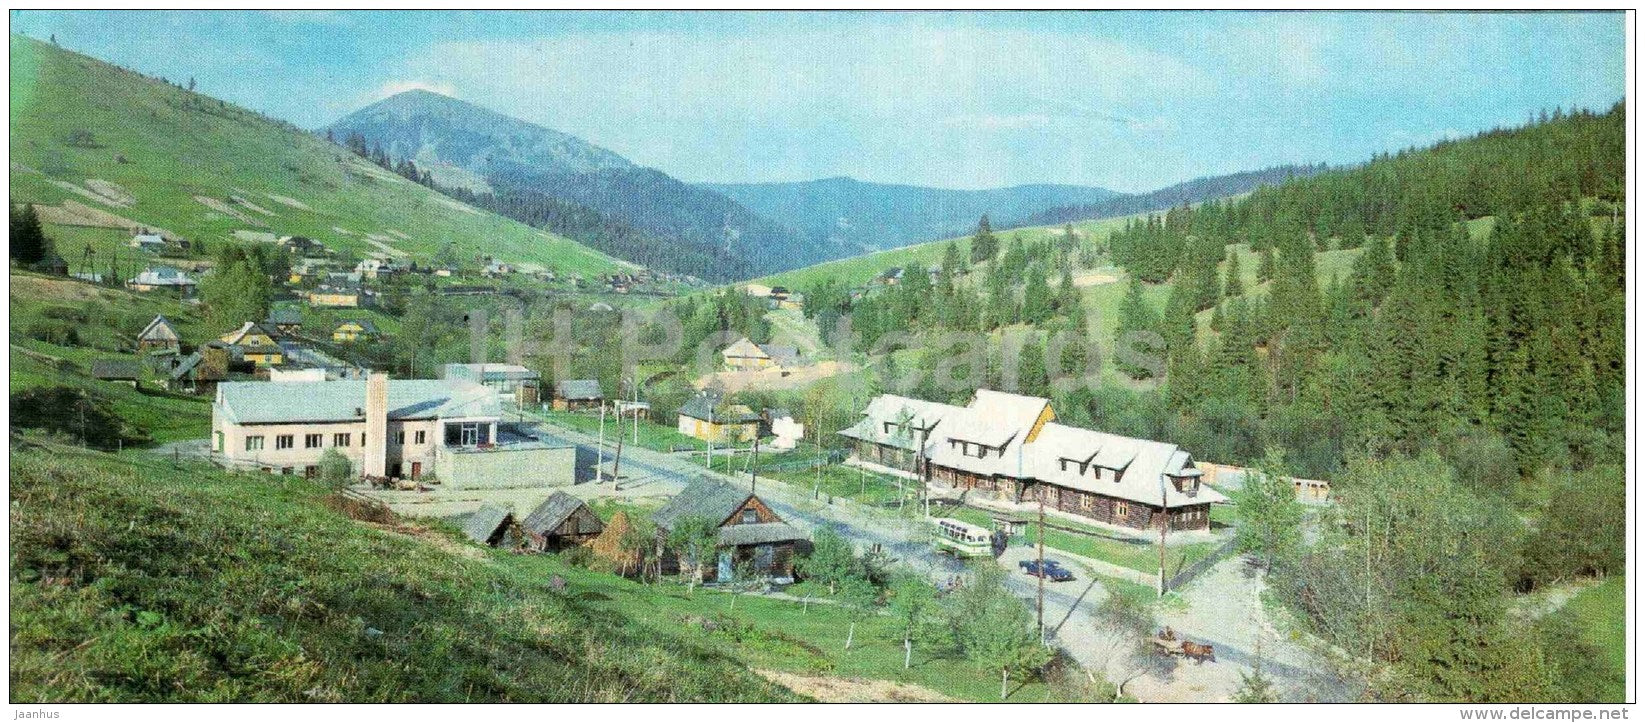 view at Yablonitsa village on Yablonitsa pass - Carpathian Mountains - 1984 - Ukraine USSR - unused - JH Postcards